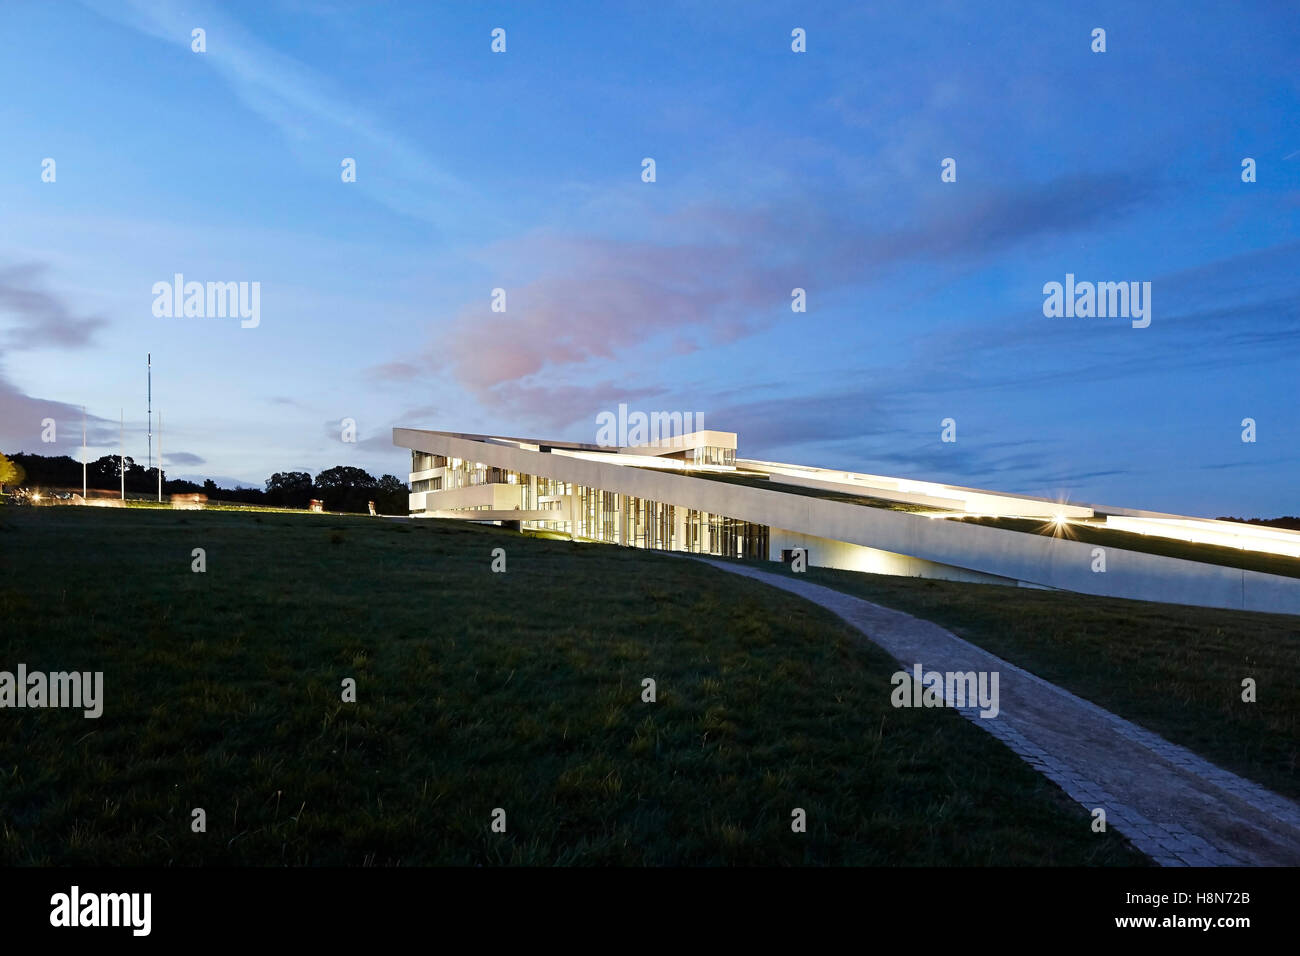 L'altitude de nuit éclairé avec l'approche des capacités. Musée Moesgaard, Aarhus, Danemark. Architecte : Henning Larsen, 2015. Banque D'Images